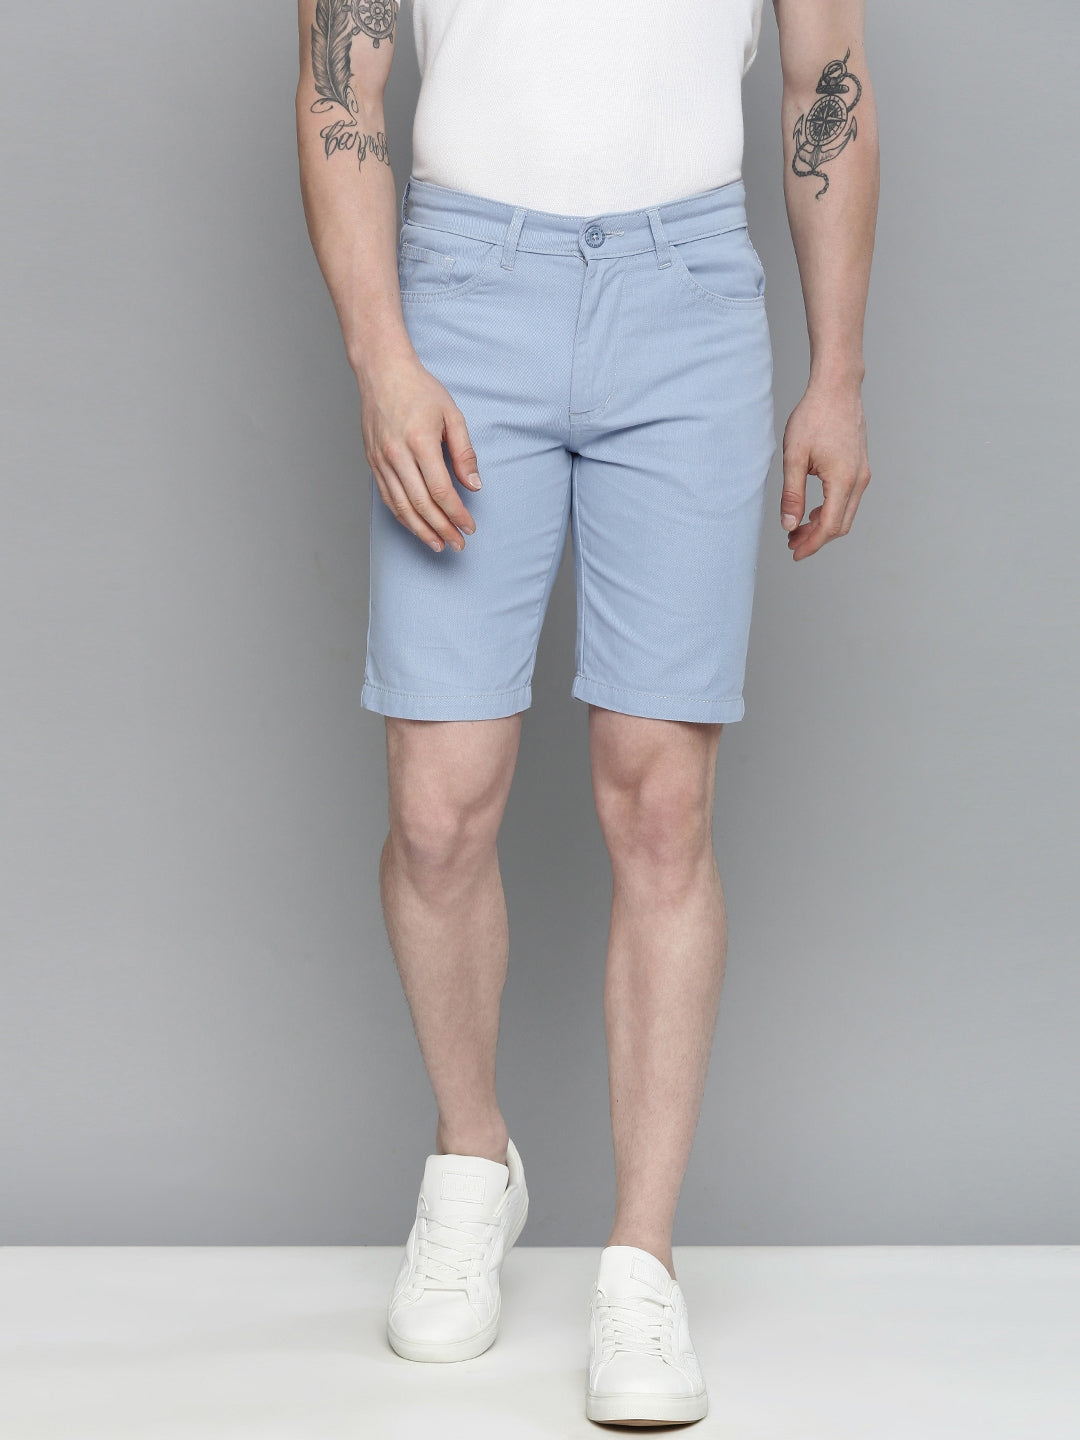 Shop Men Cotton Shorts Online.